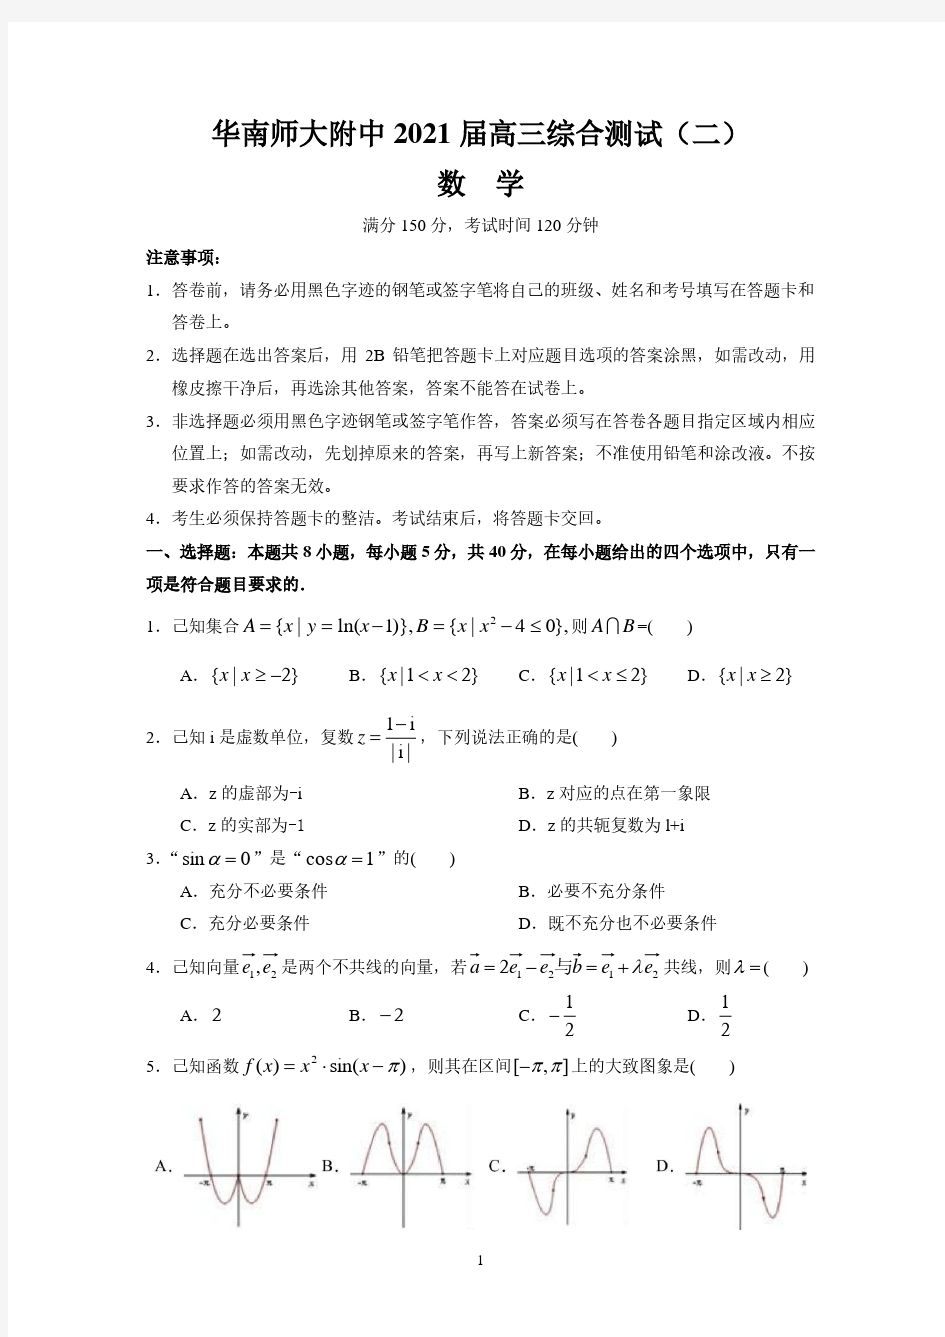 广东省华南师范大学附属中学2021届高三数学综合测试(二)